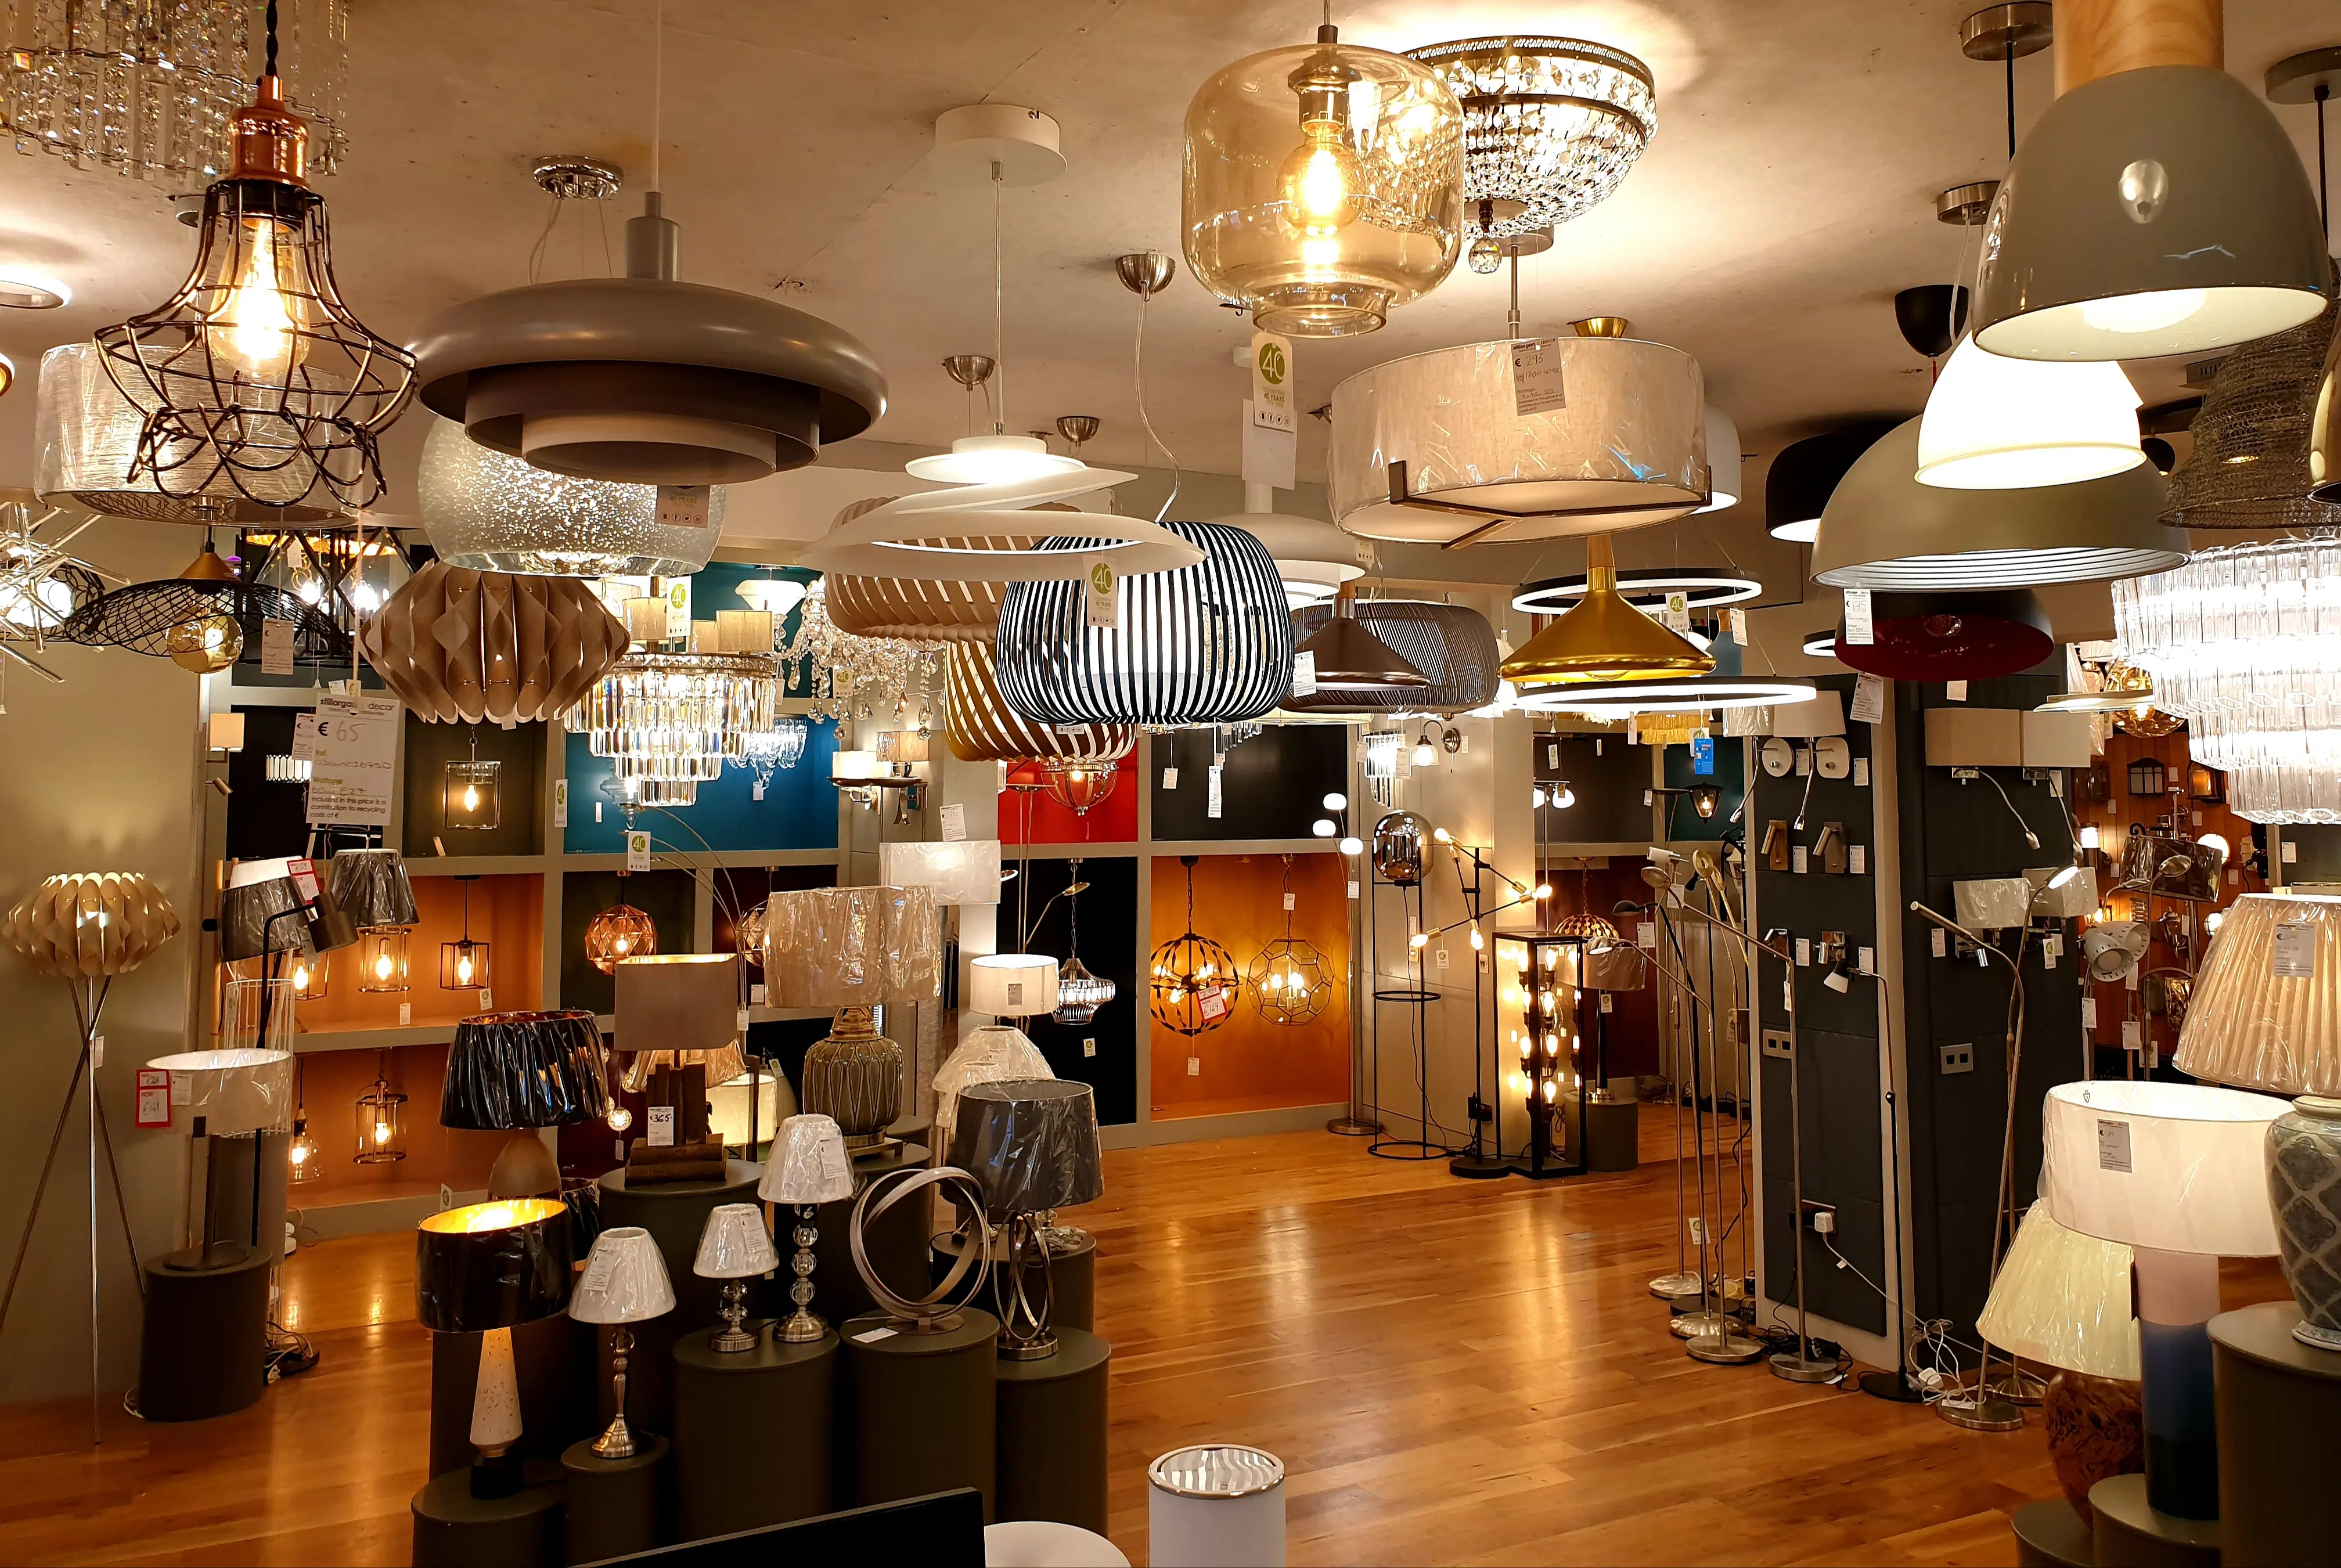 lighting shop in dublin - stillorgan decor